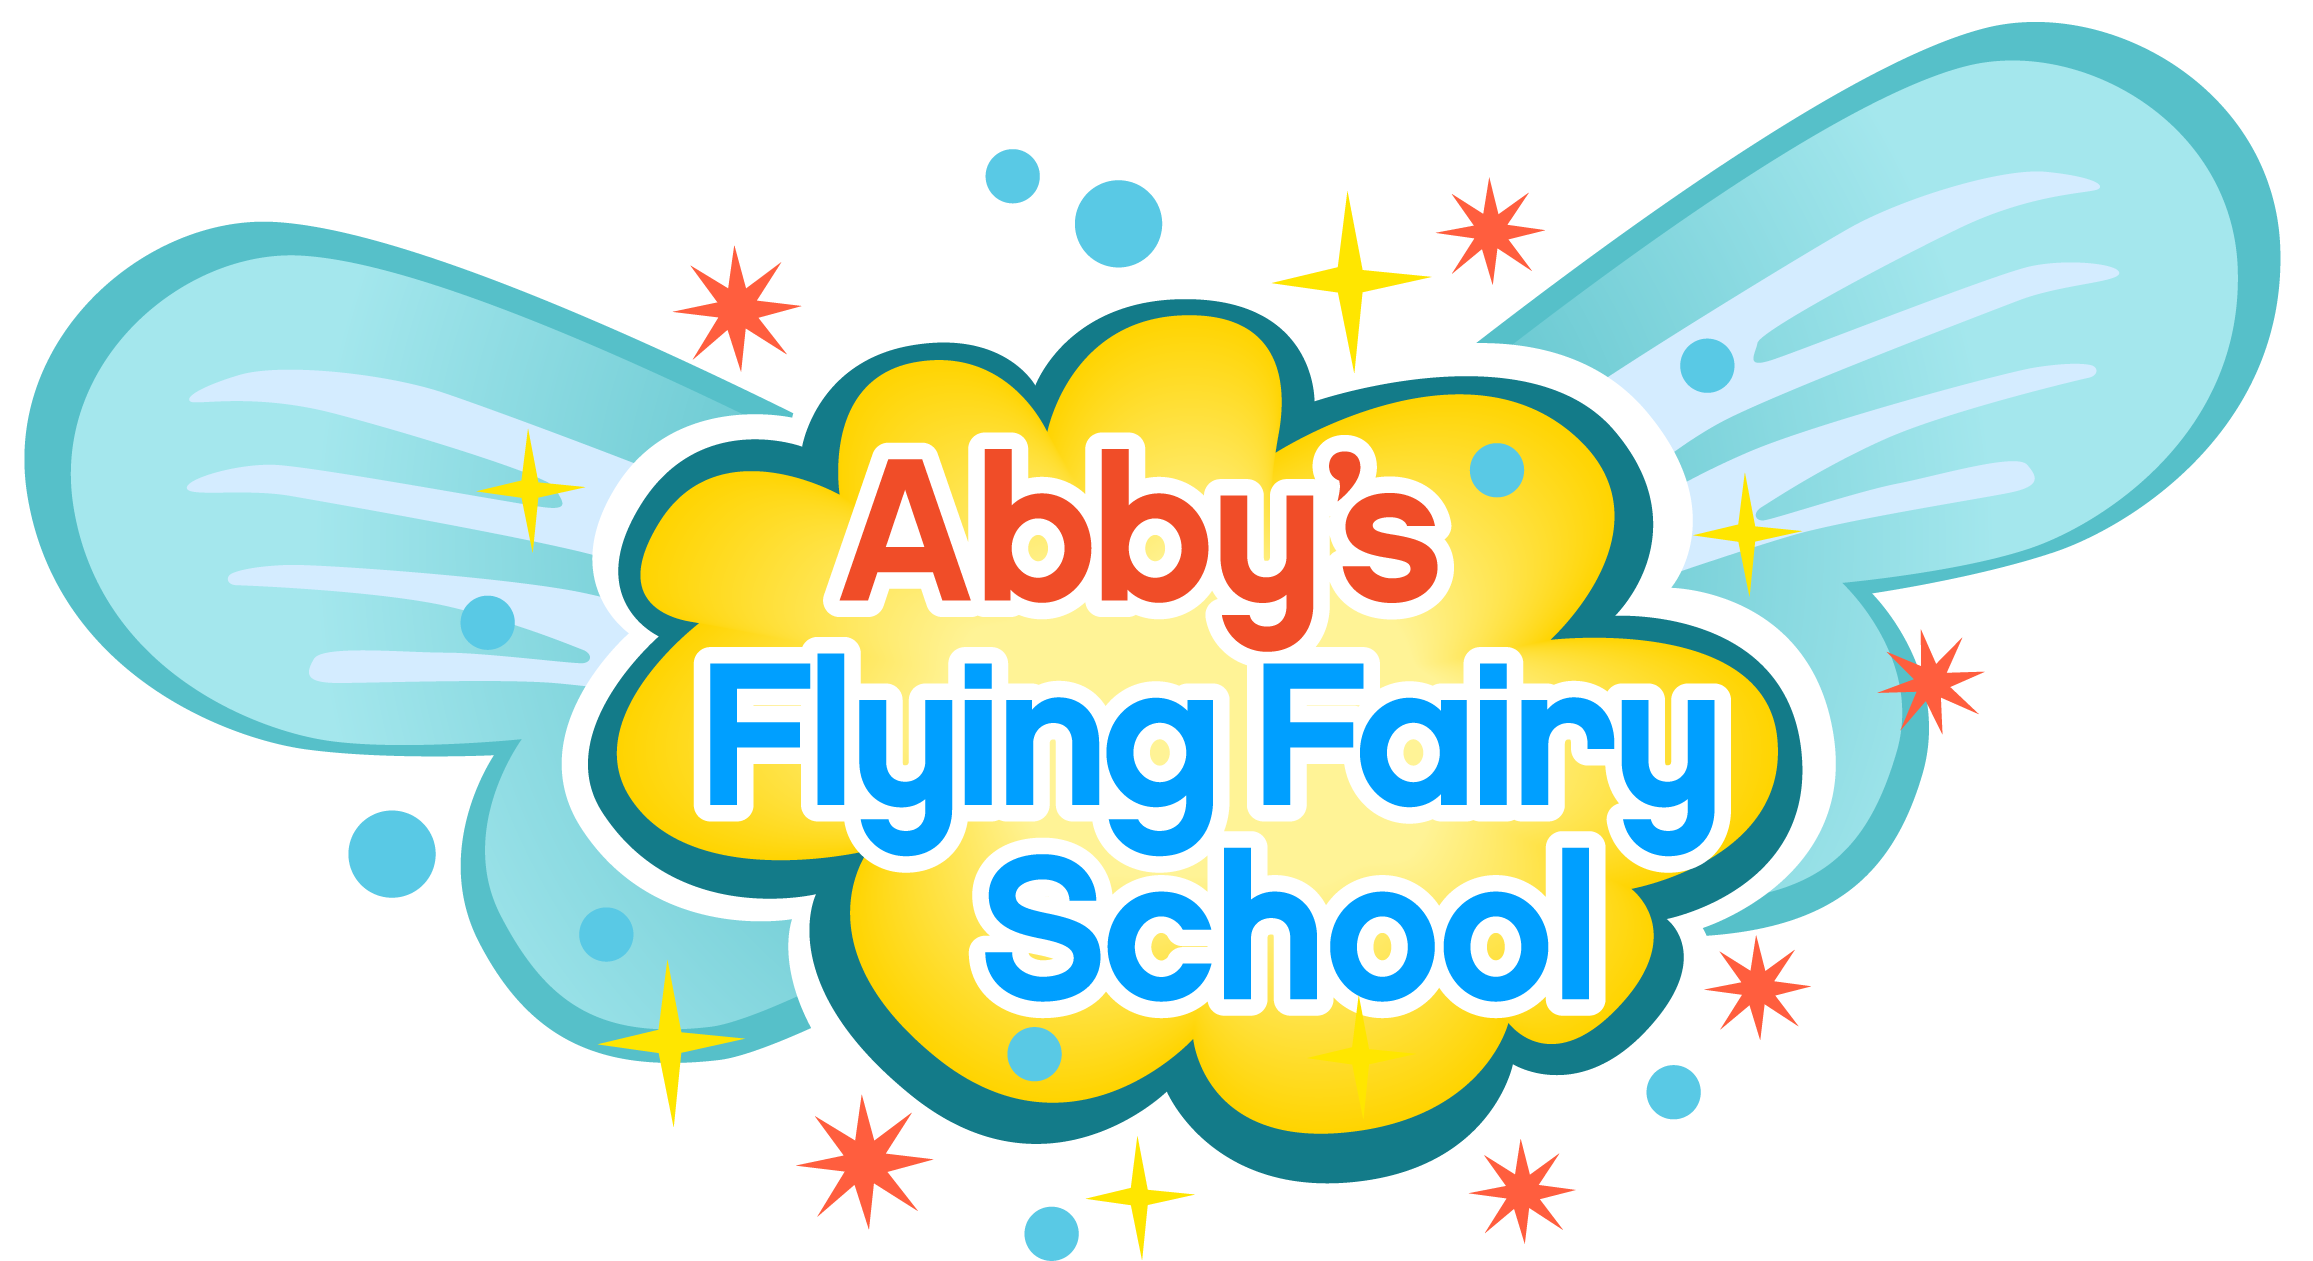 Abby's Flying Fairy School - Abby's Flying Fairy School Logo (2337x1293)